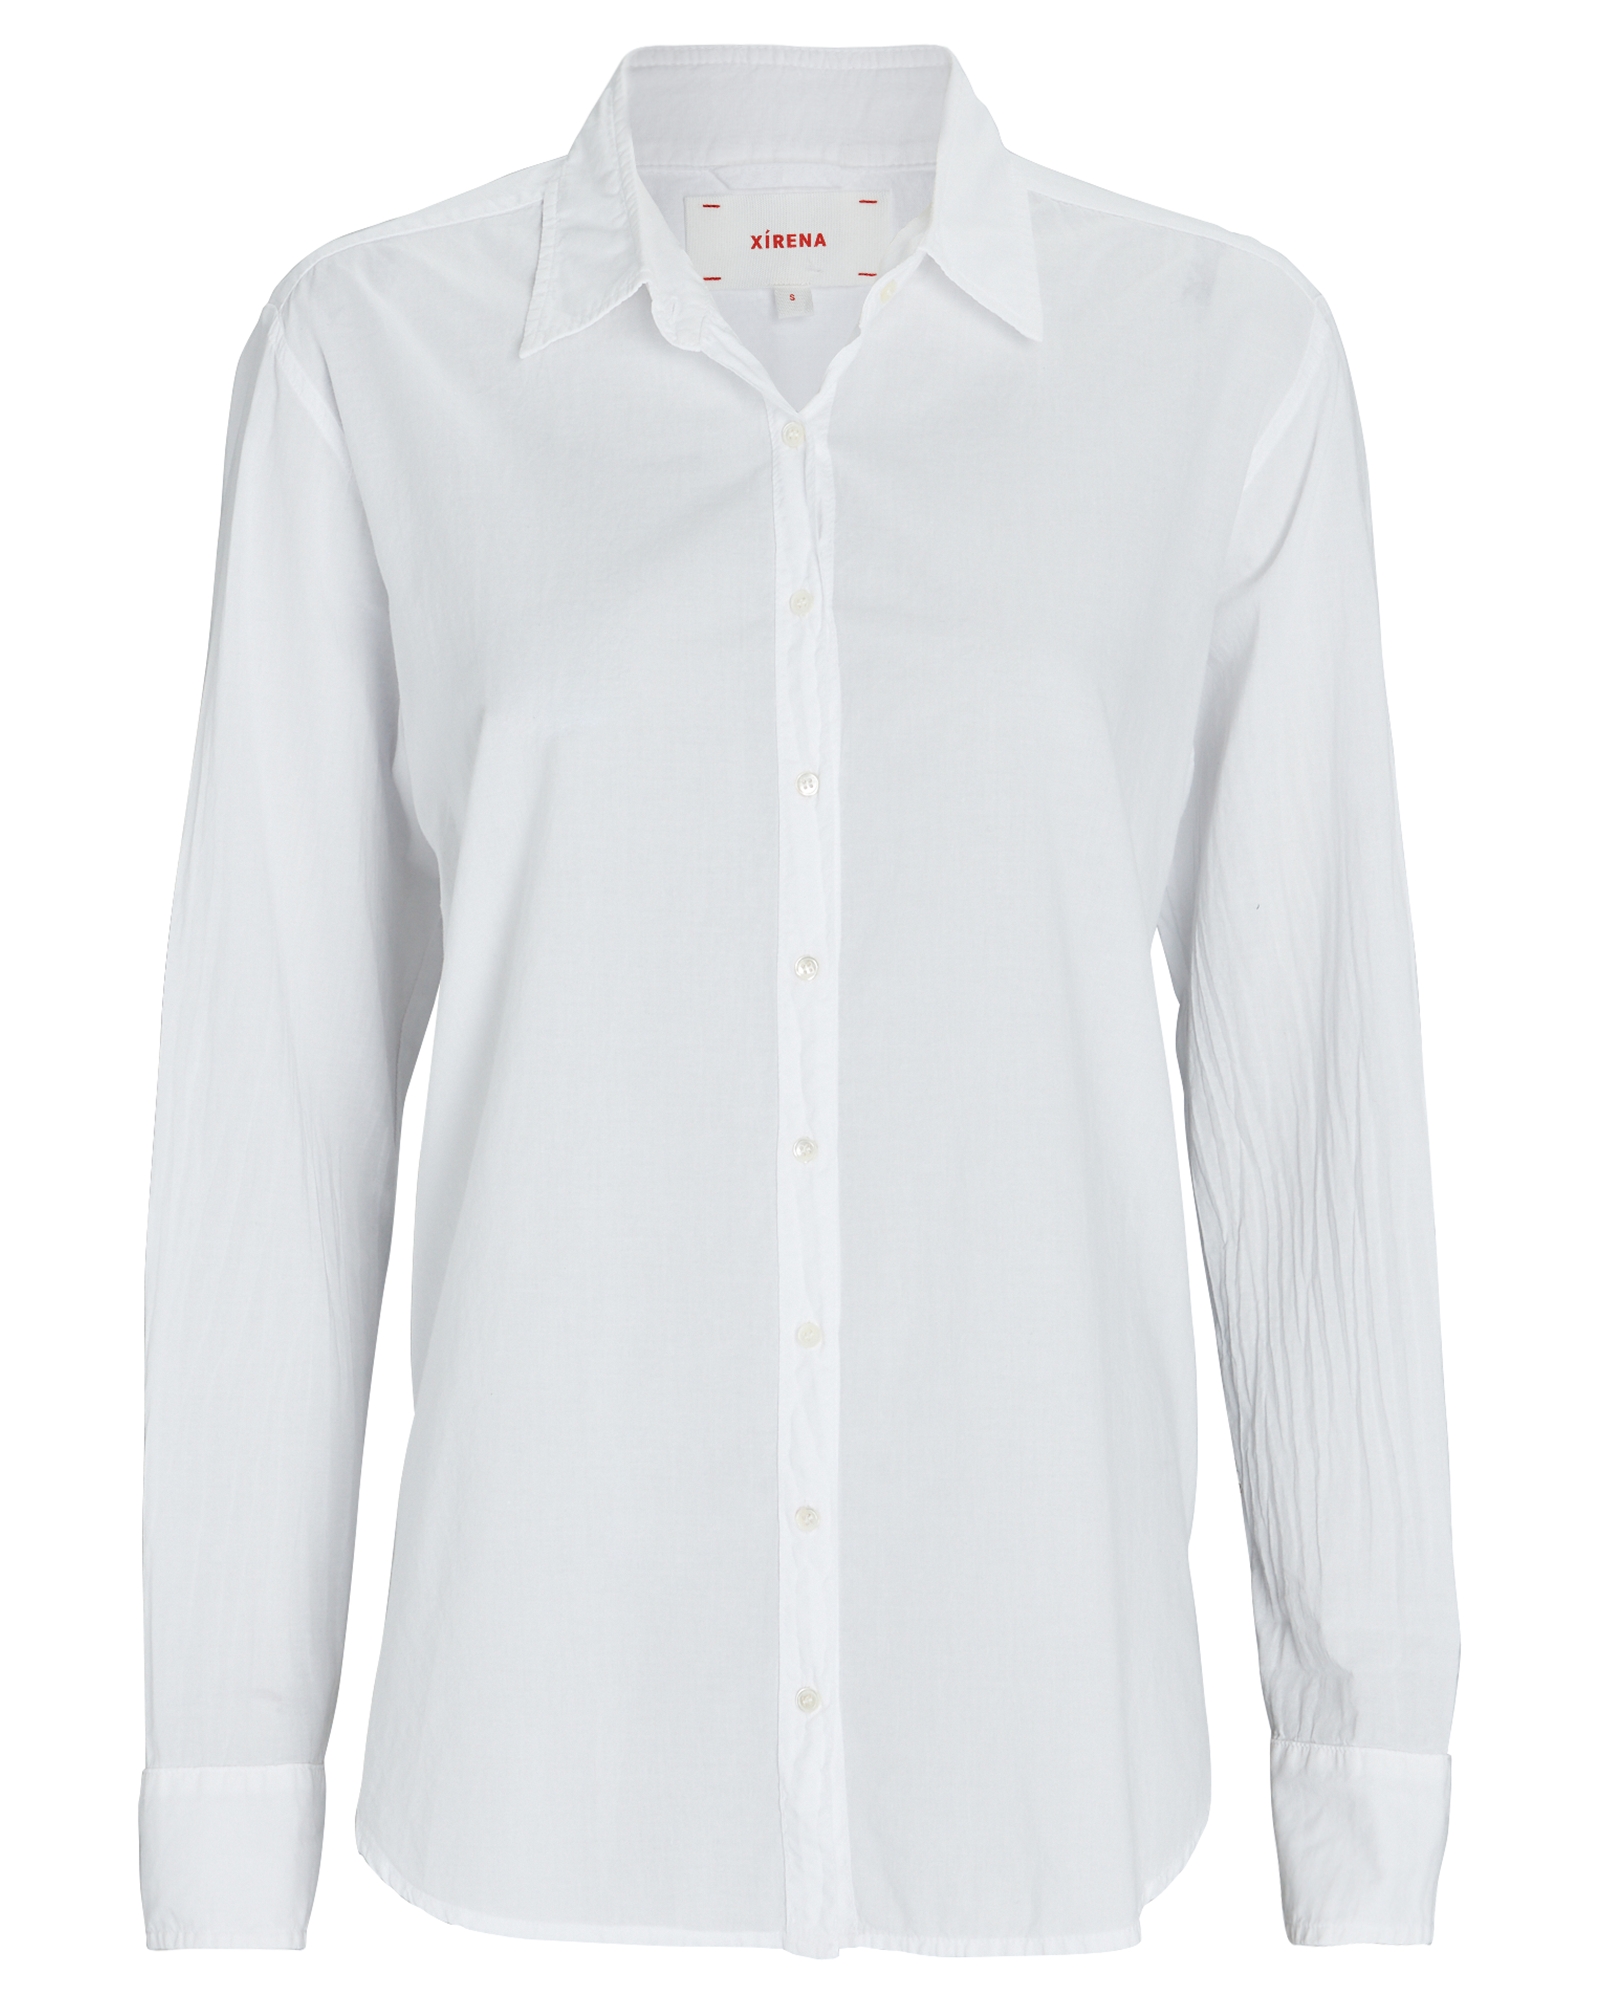 XíRENA Beau Cotton Button-Down Shirt, White L